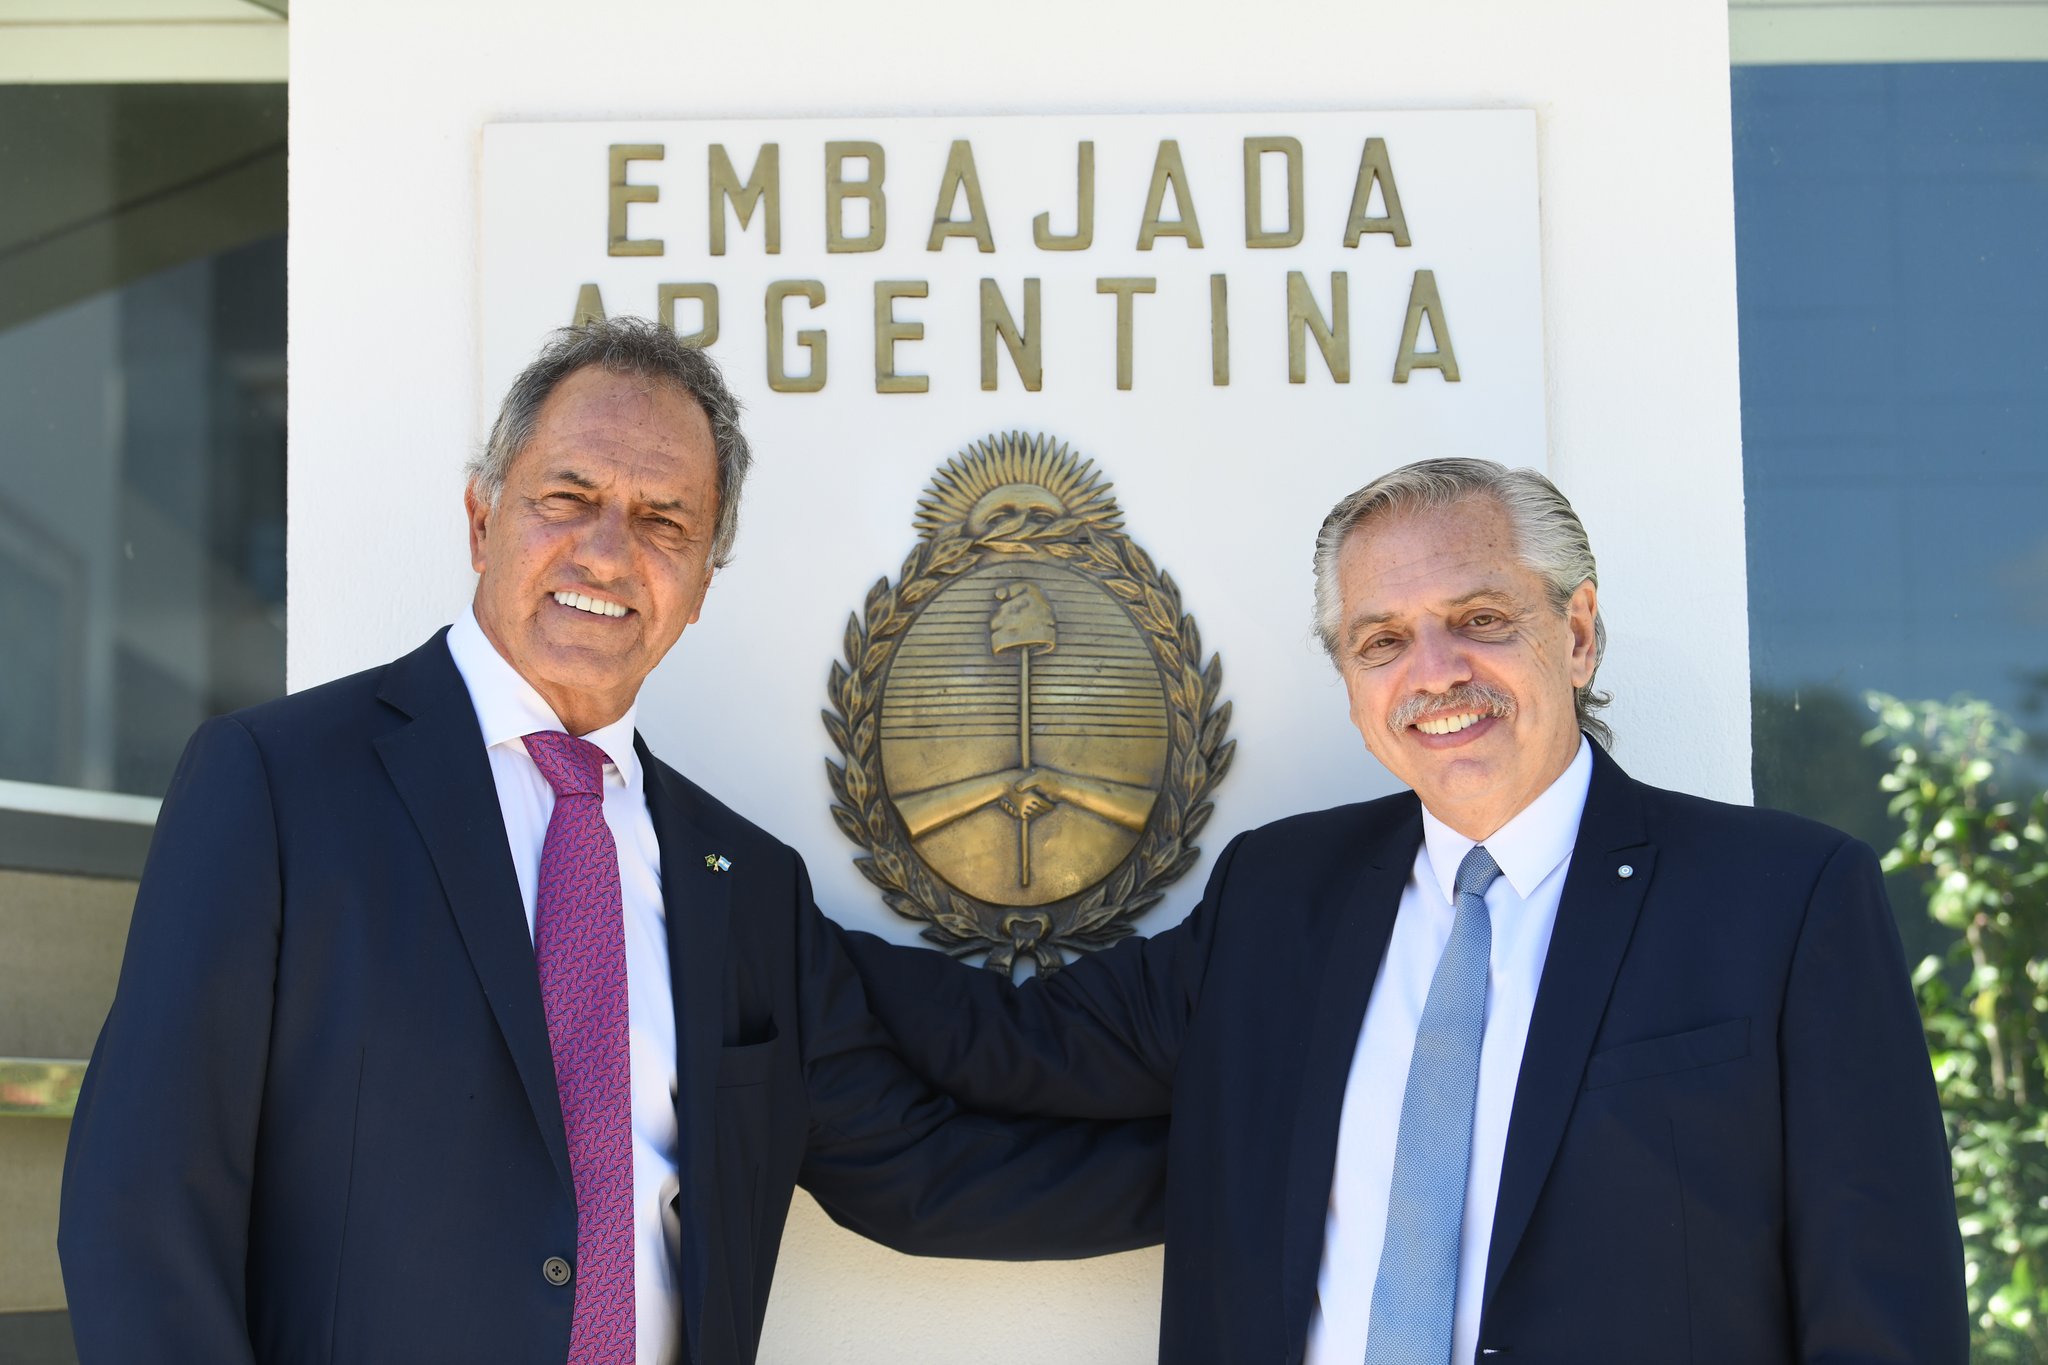 El embajador Daniel Scioli con el presidente Alberto Fernández